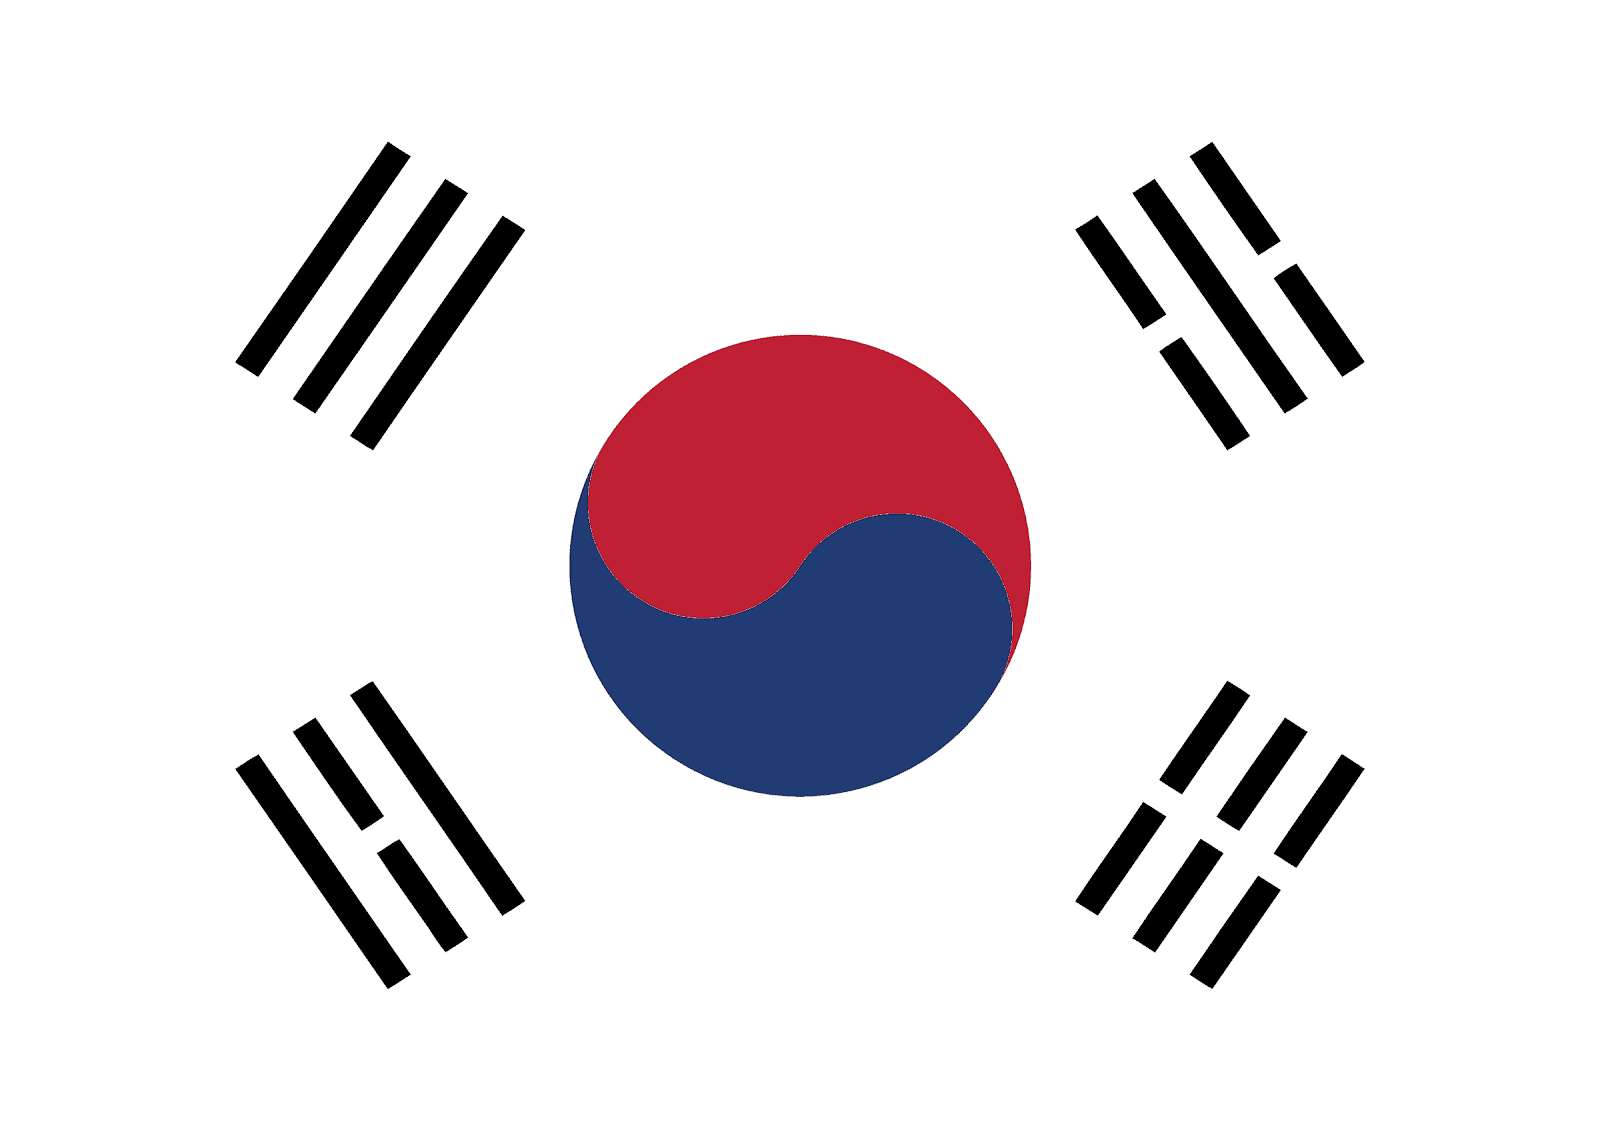 Corea quốc kì puzzle online